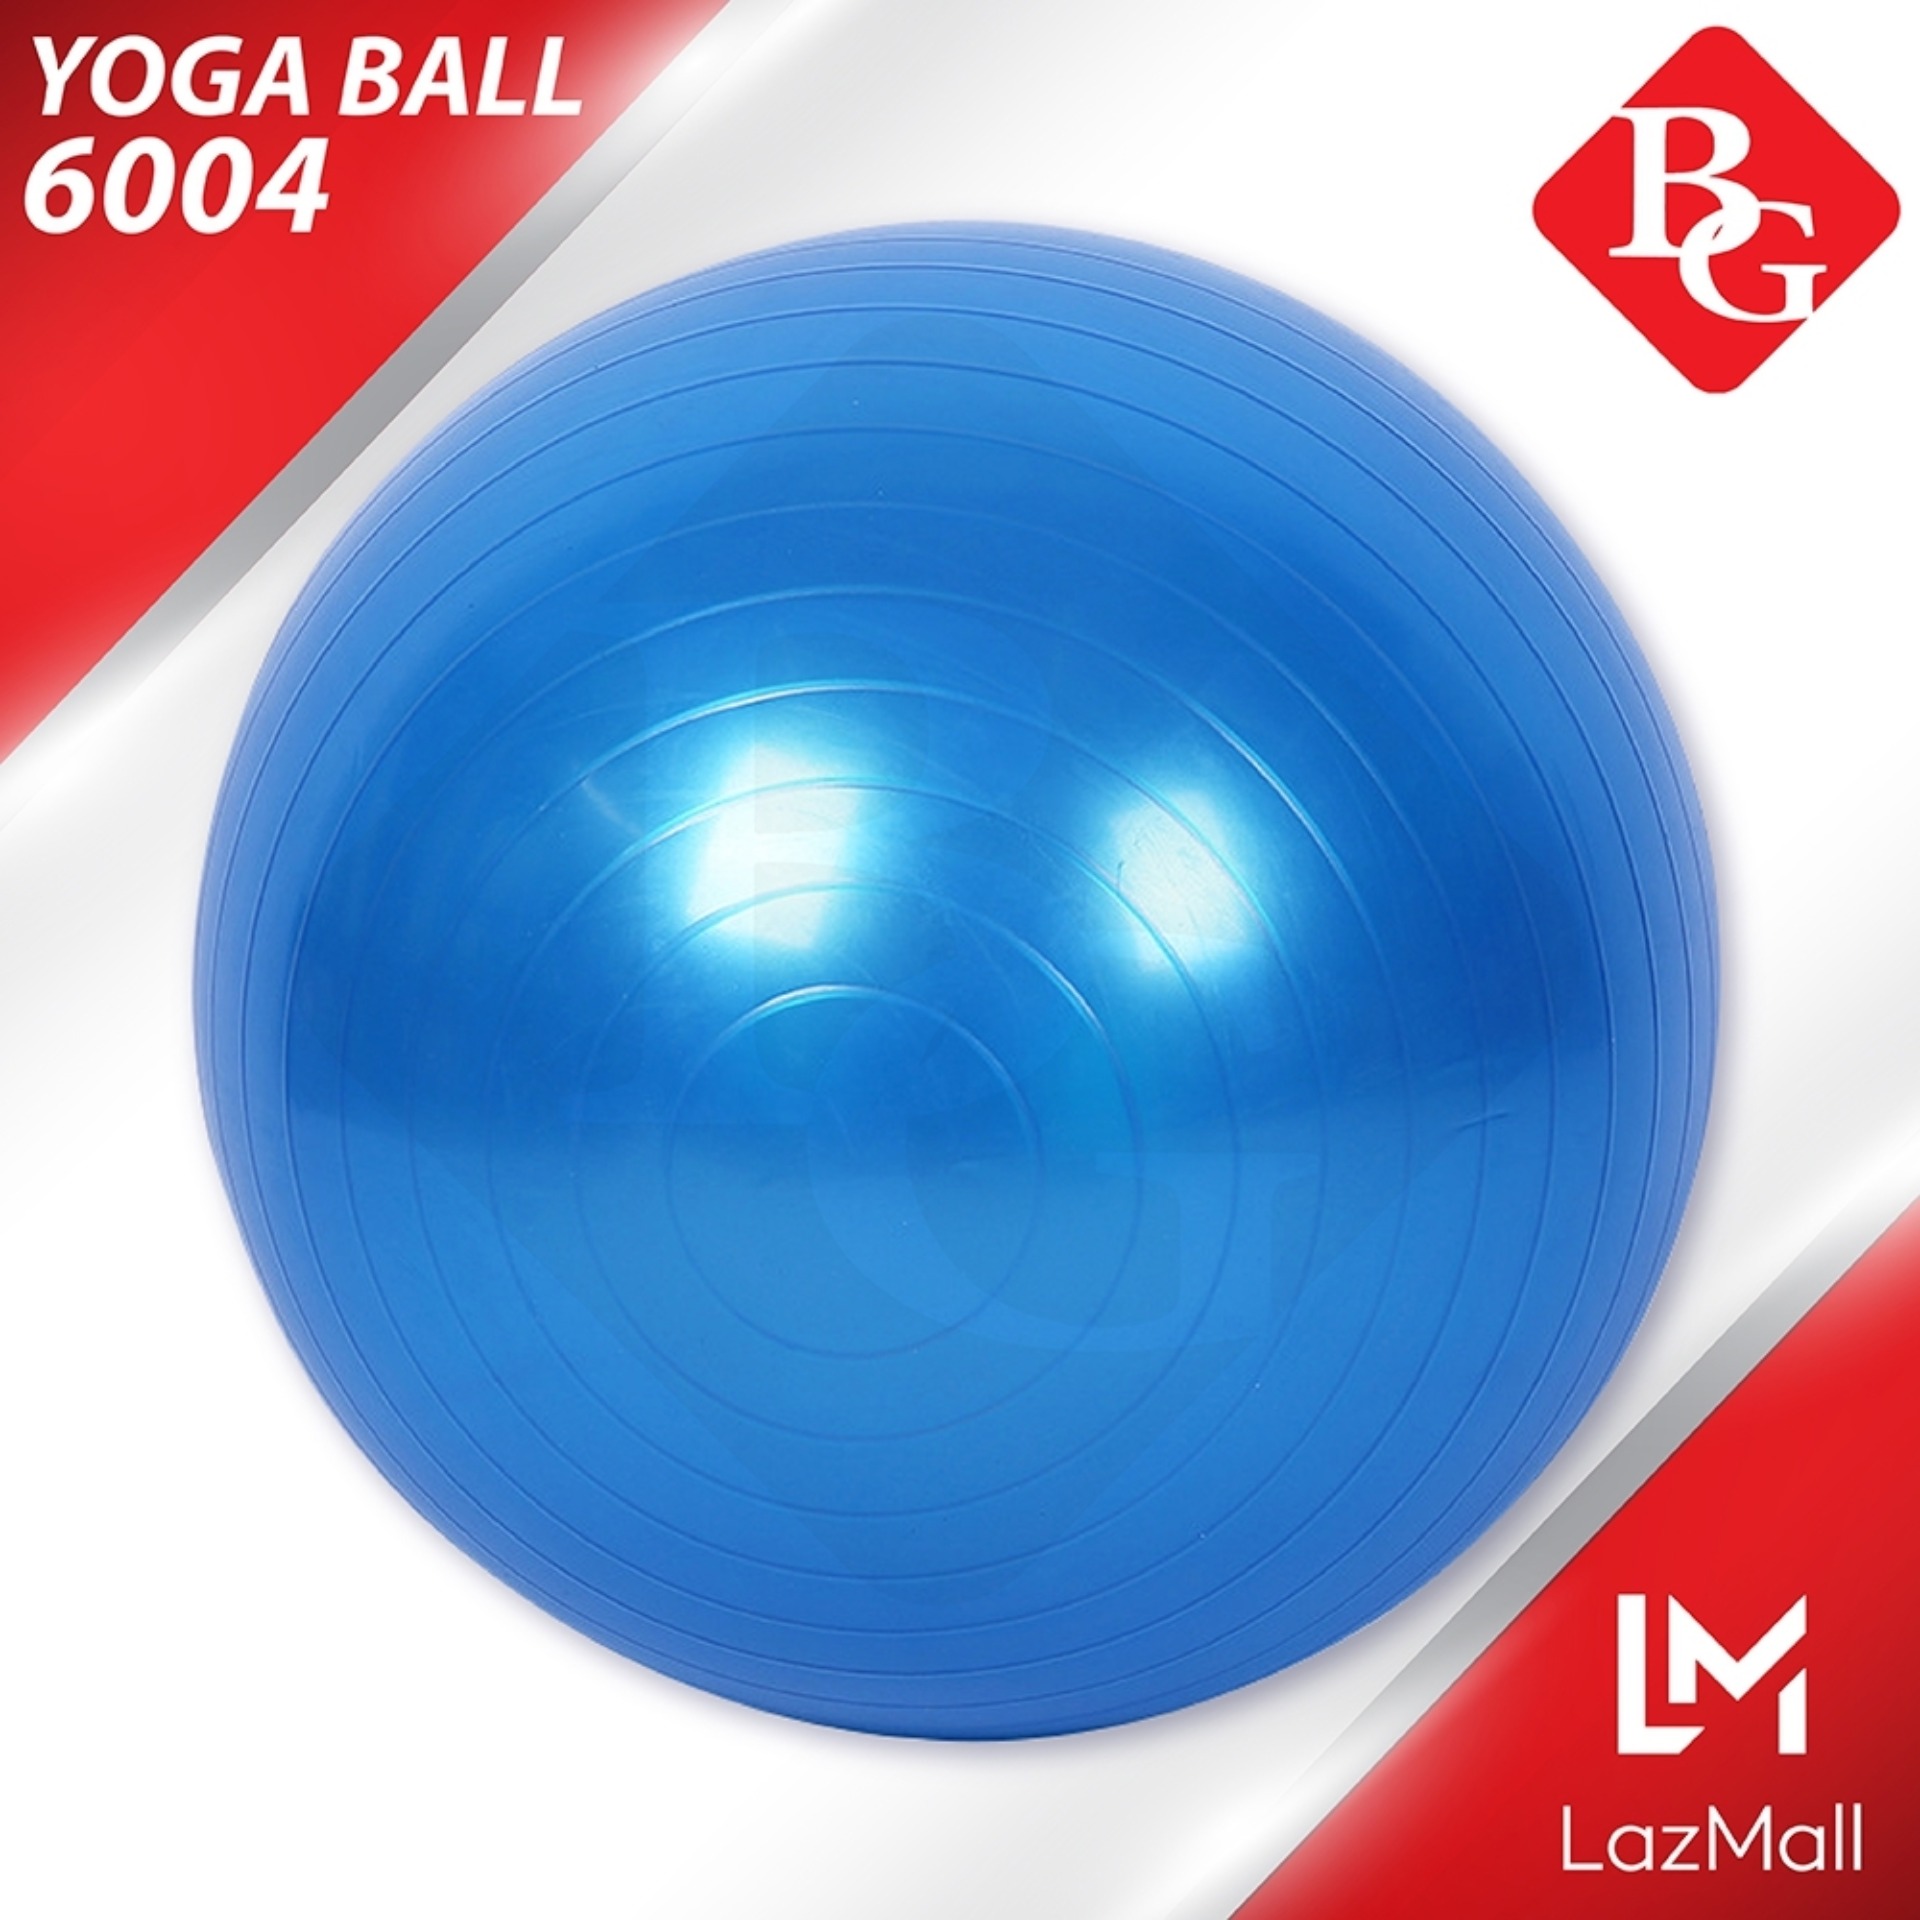 B&G ลูกบอลโยคะ 65 ซม. Yoga Ball รุ่น 6004 (Blue) แถมฟรี ที่สูบลม